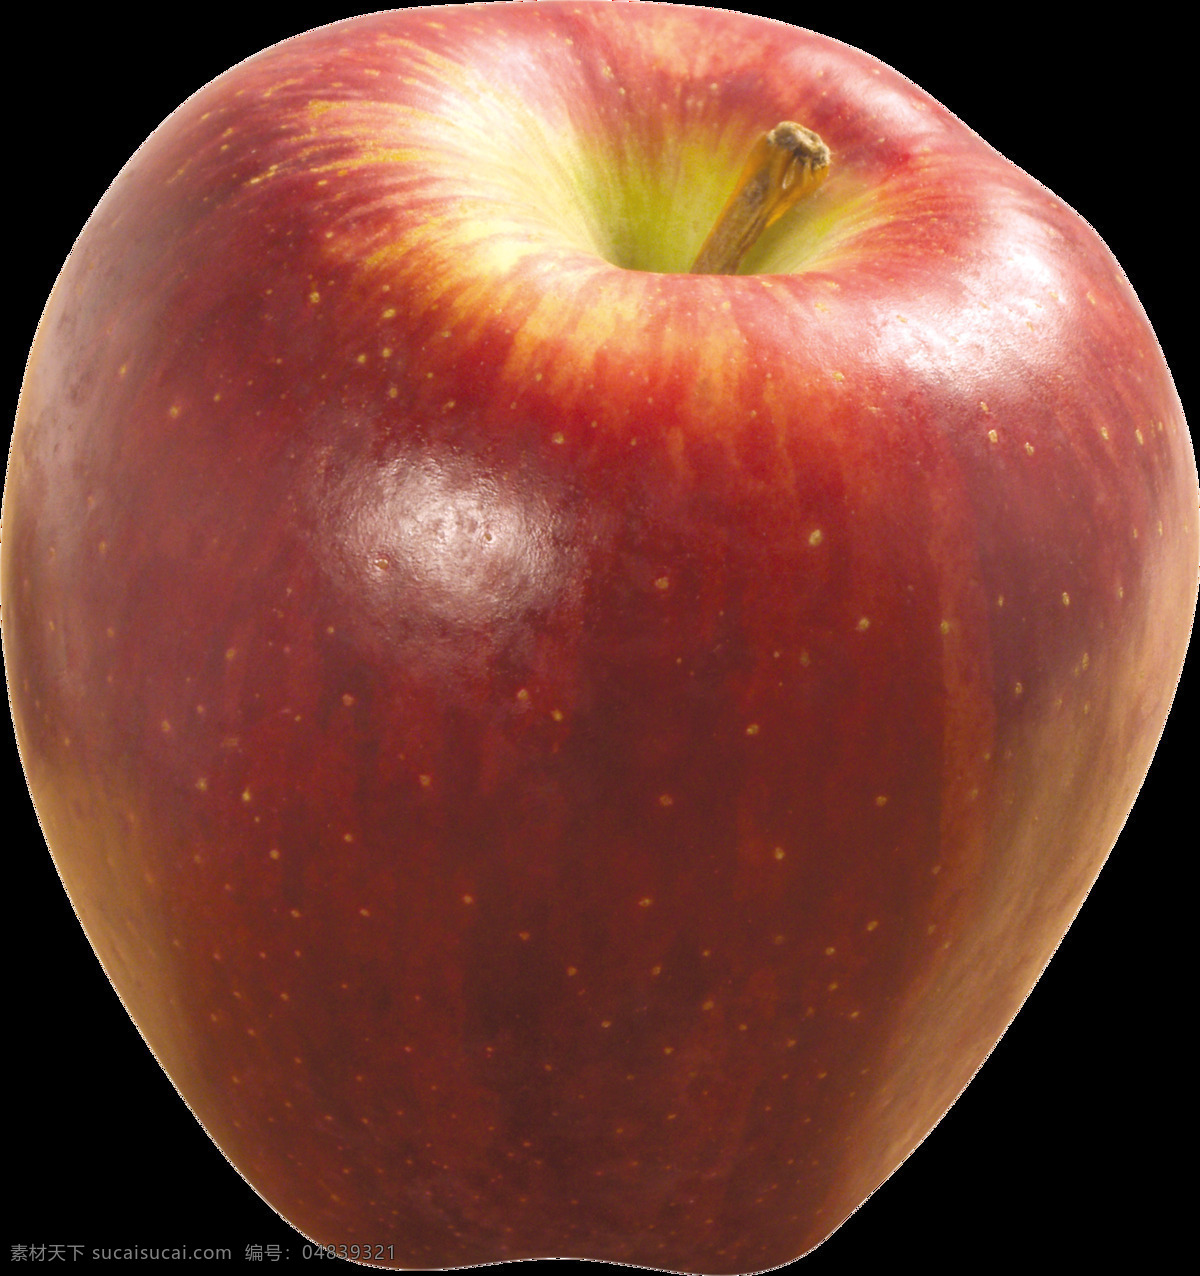 漂亮 红苹果 免 抠 透明 图 层 青苹果 苹果卡通图片 苹果logo 苹果简笔画 壁纸高清 大苹果 苹果梨树 苹果 苹果商标 金毛苹果 青苹果榨汁